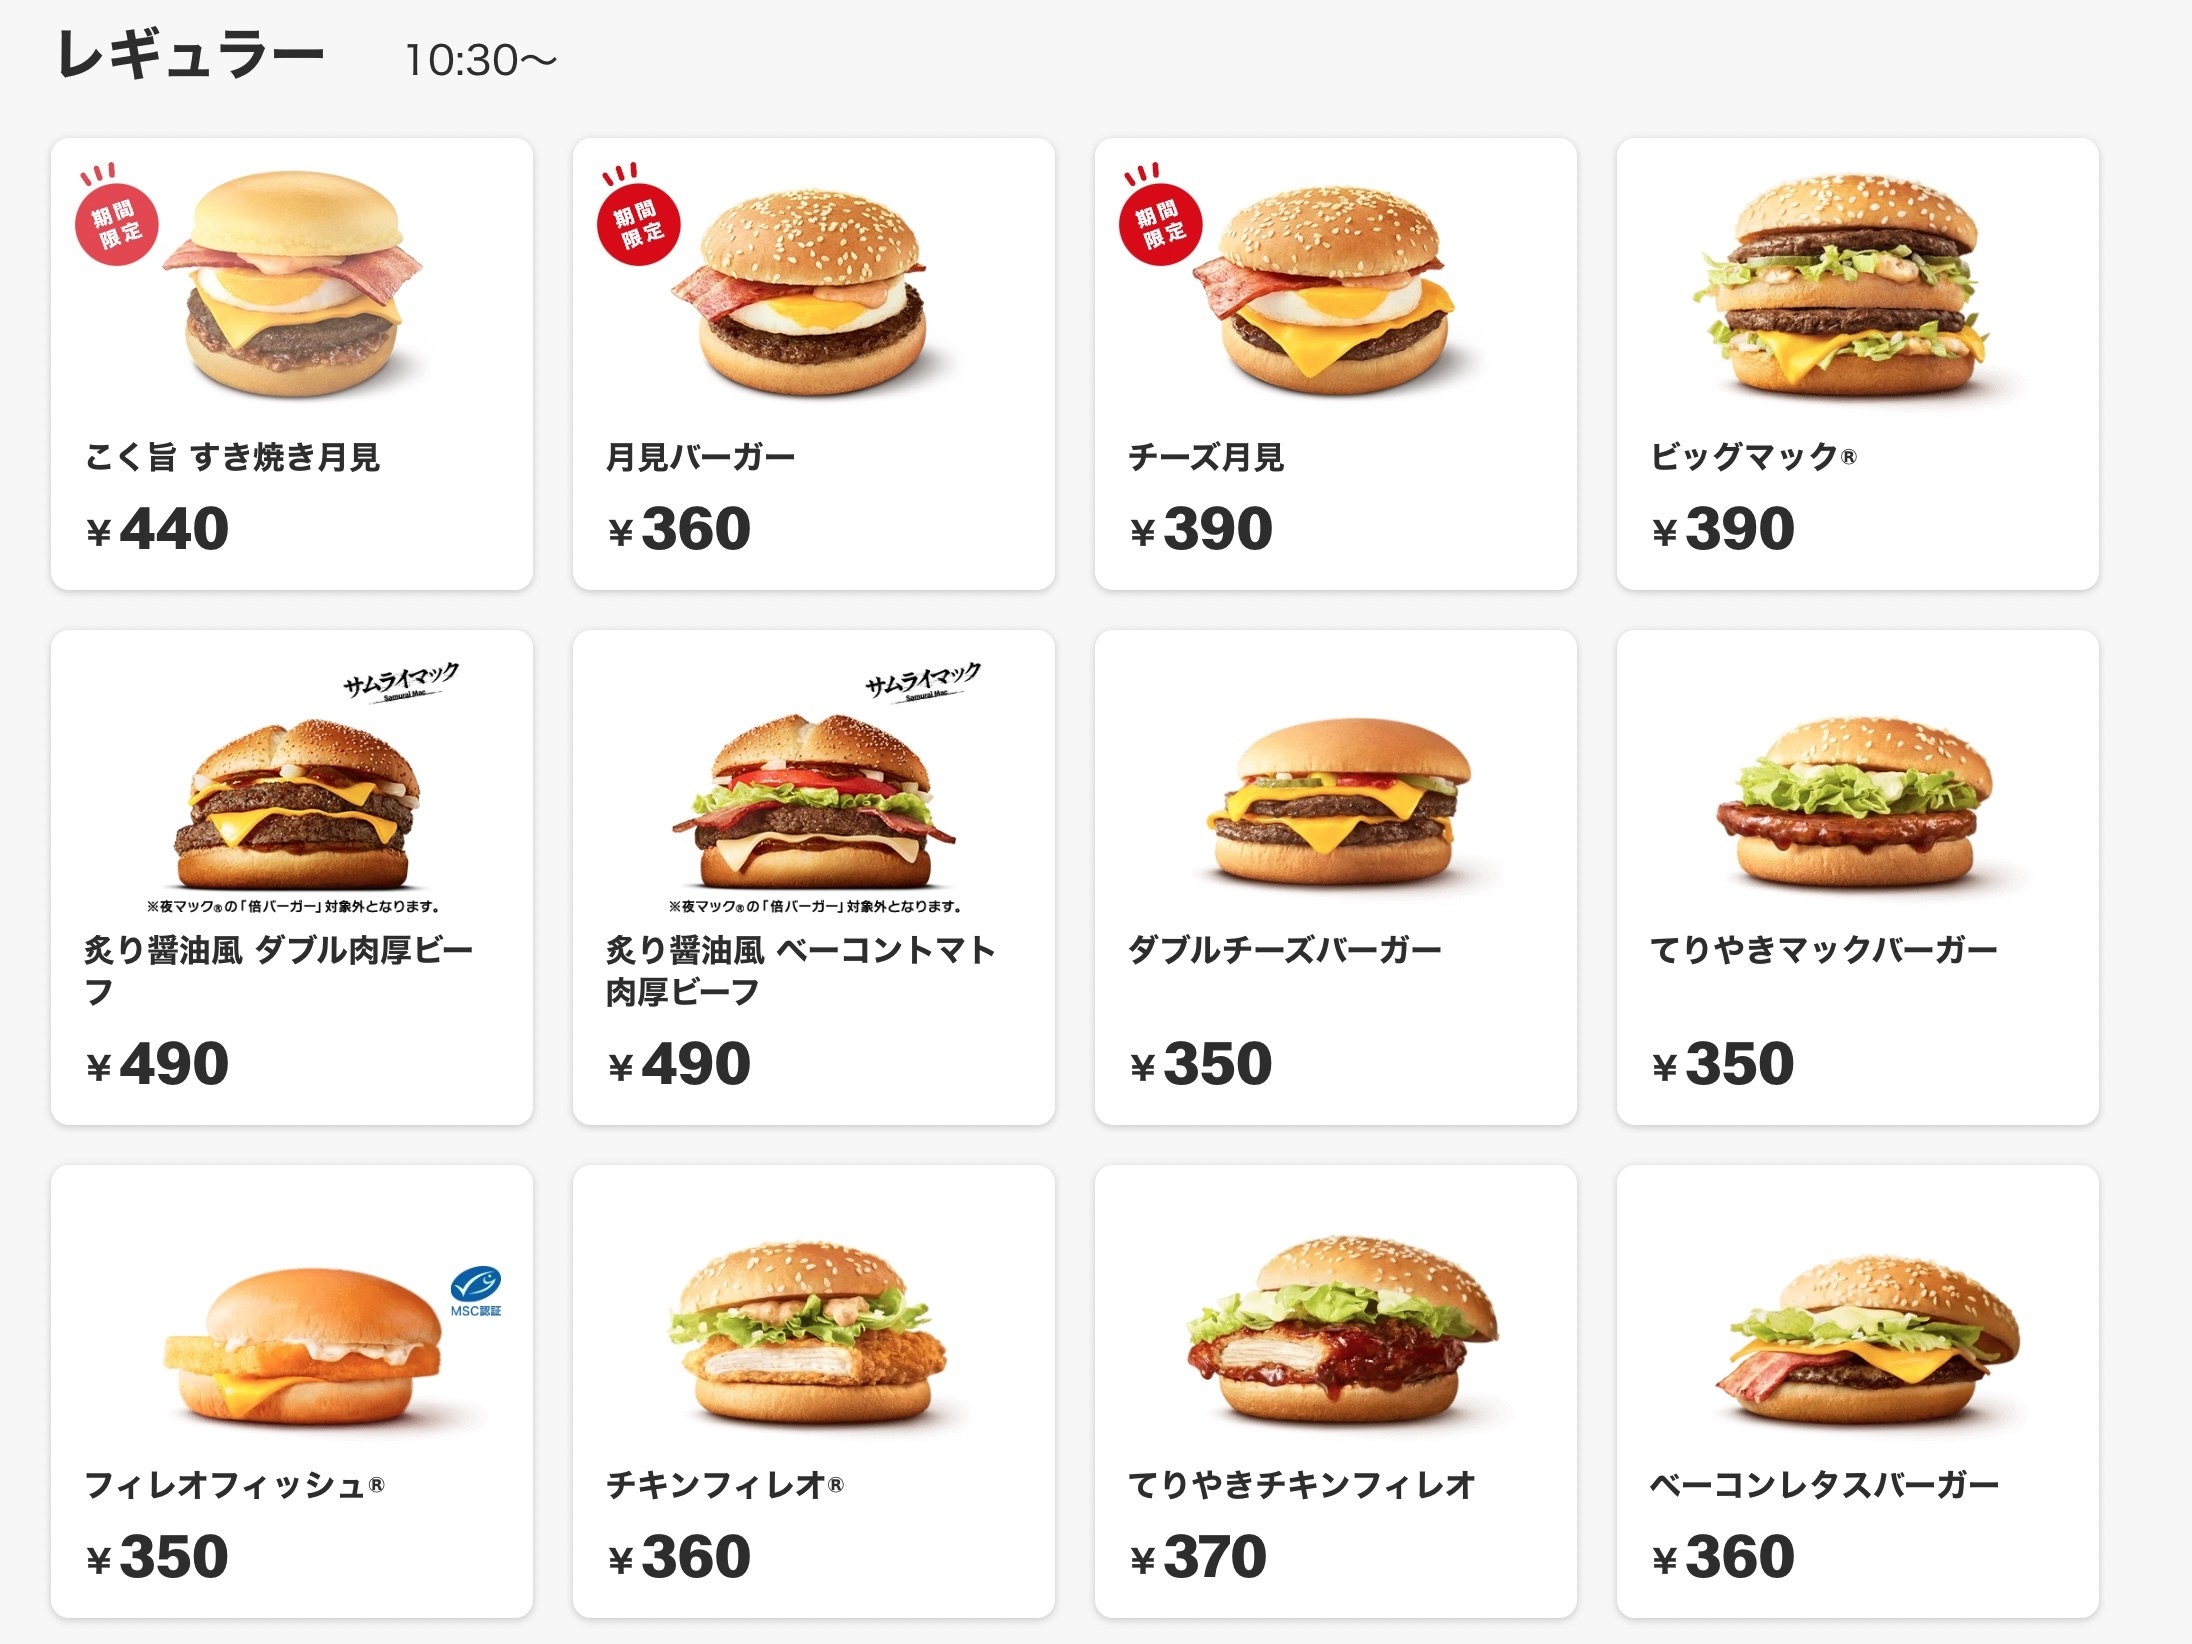 マクドナルド、9月30日から値上げ ハンバーガーは130円→150円に ...